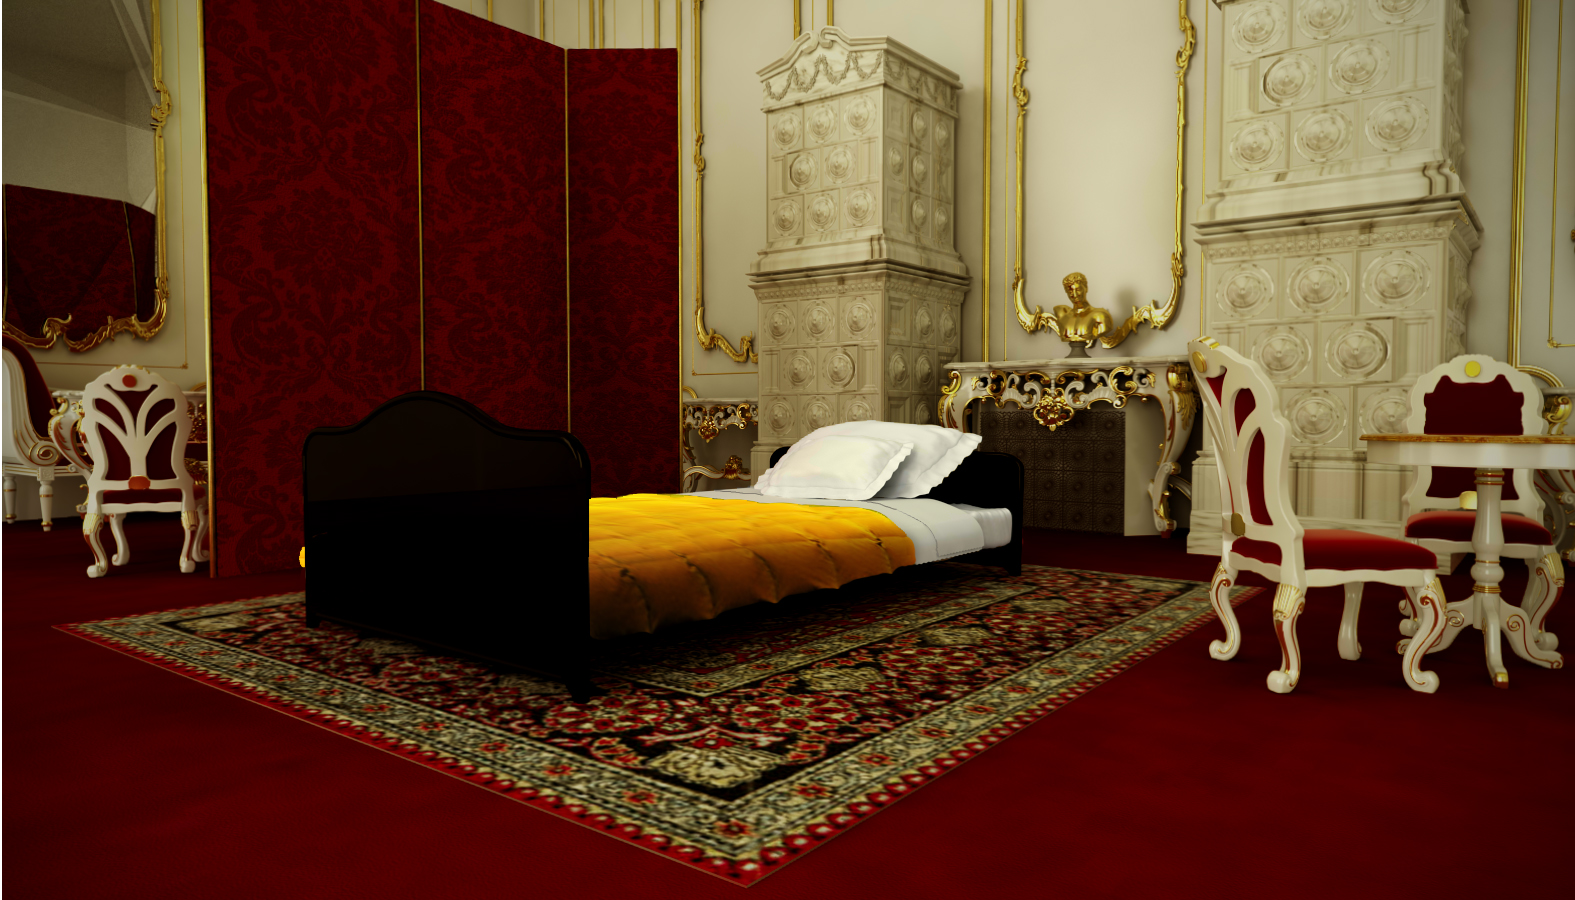 bedroom-princesa-sissi-palacio-hofburg-